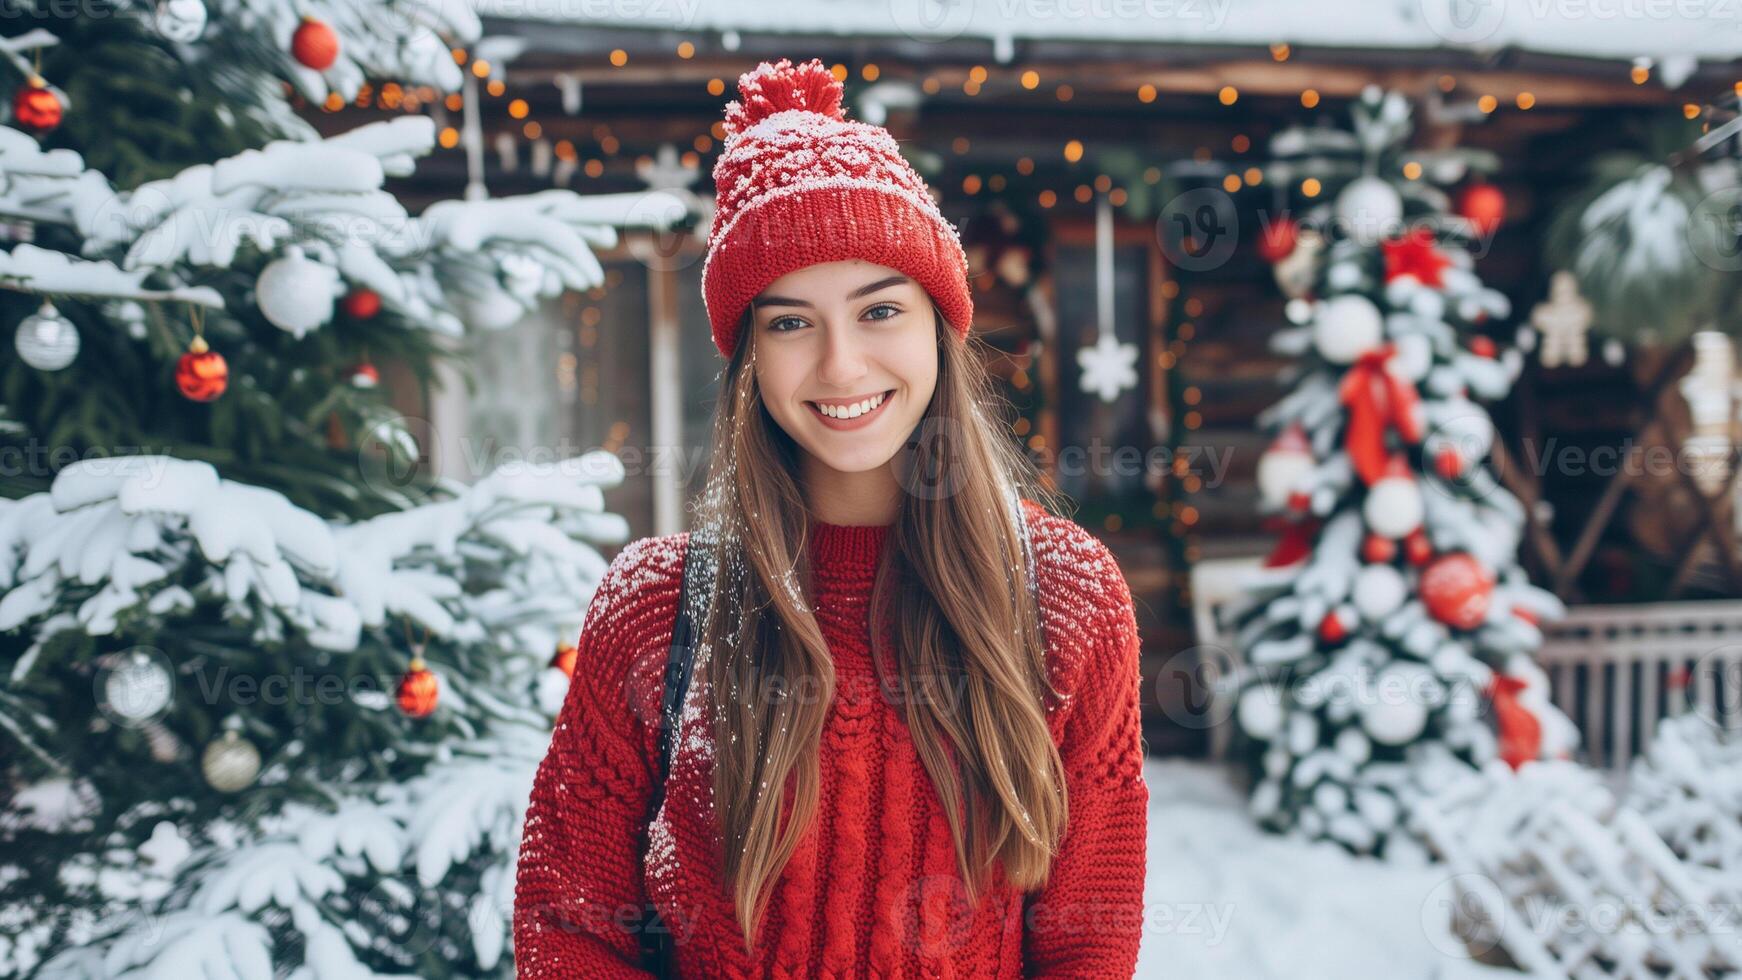 porträtt av en skön ung kvinna i en röd Tröja och hatt på de bakgrund av en jul träd. foto